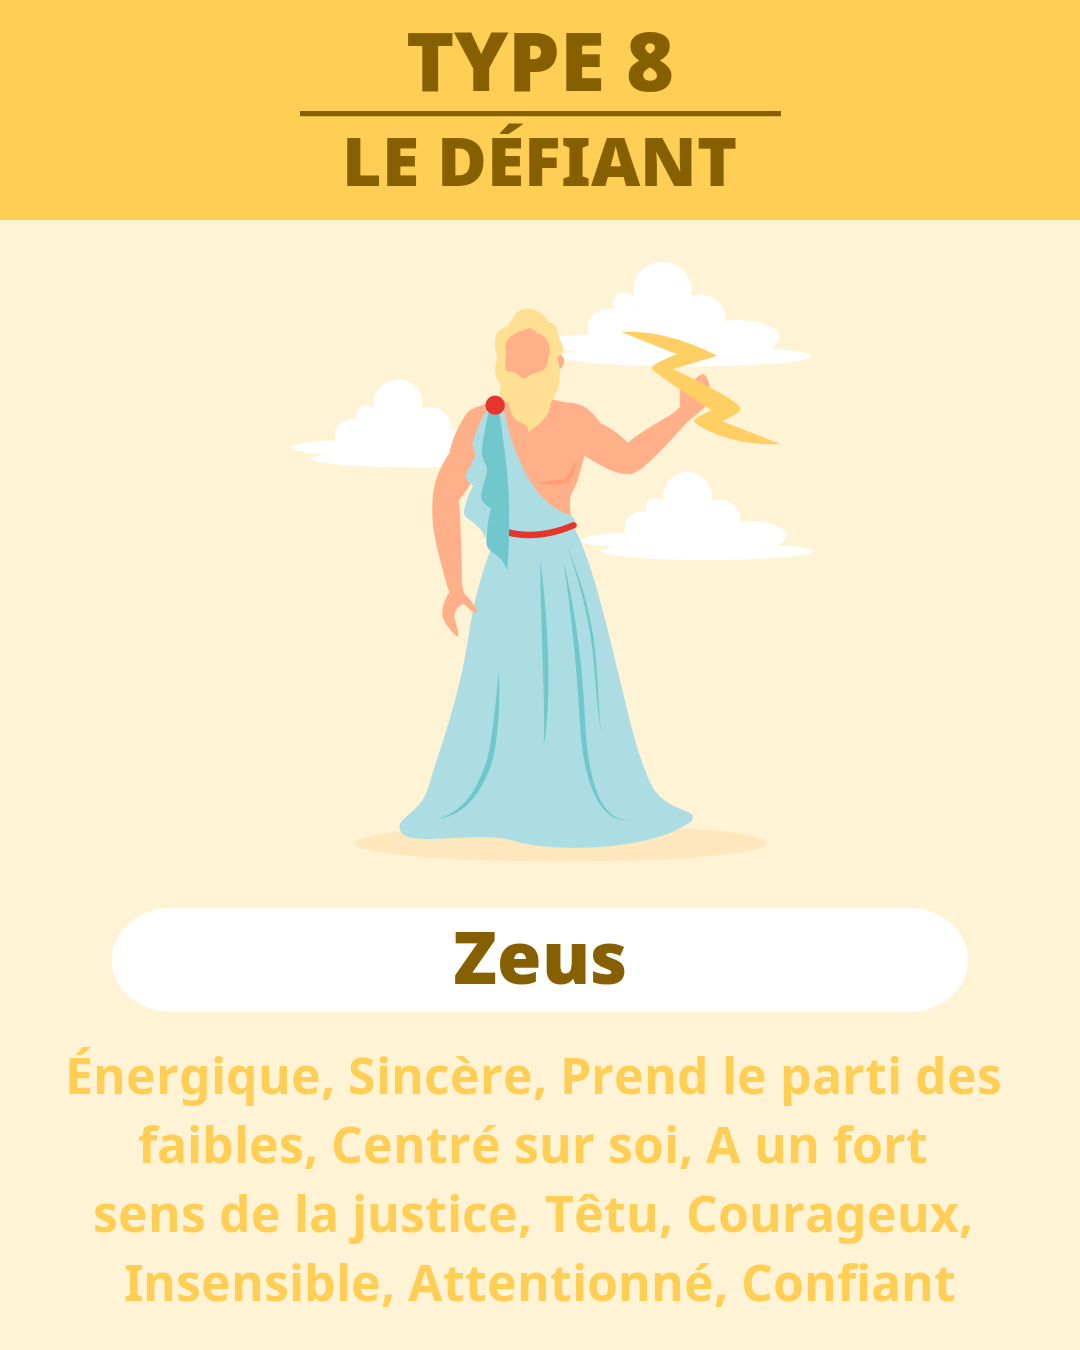 TYPE 8 - Zeus(LE DÉFIANT)